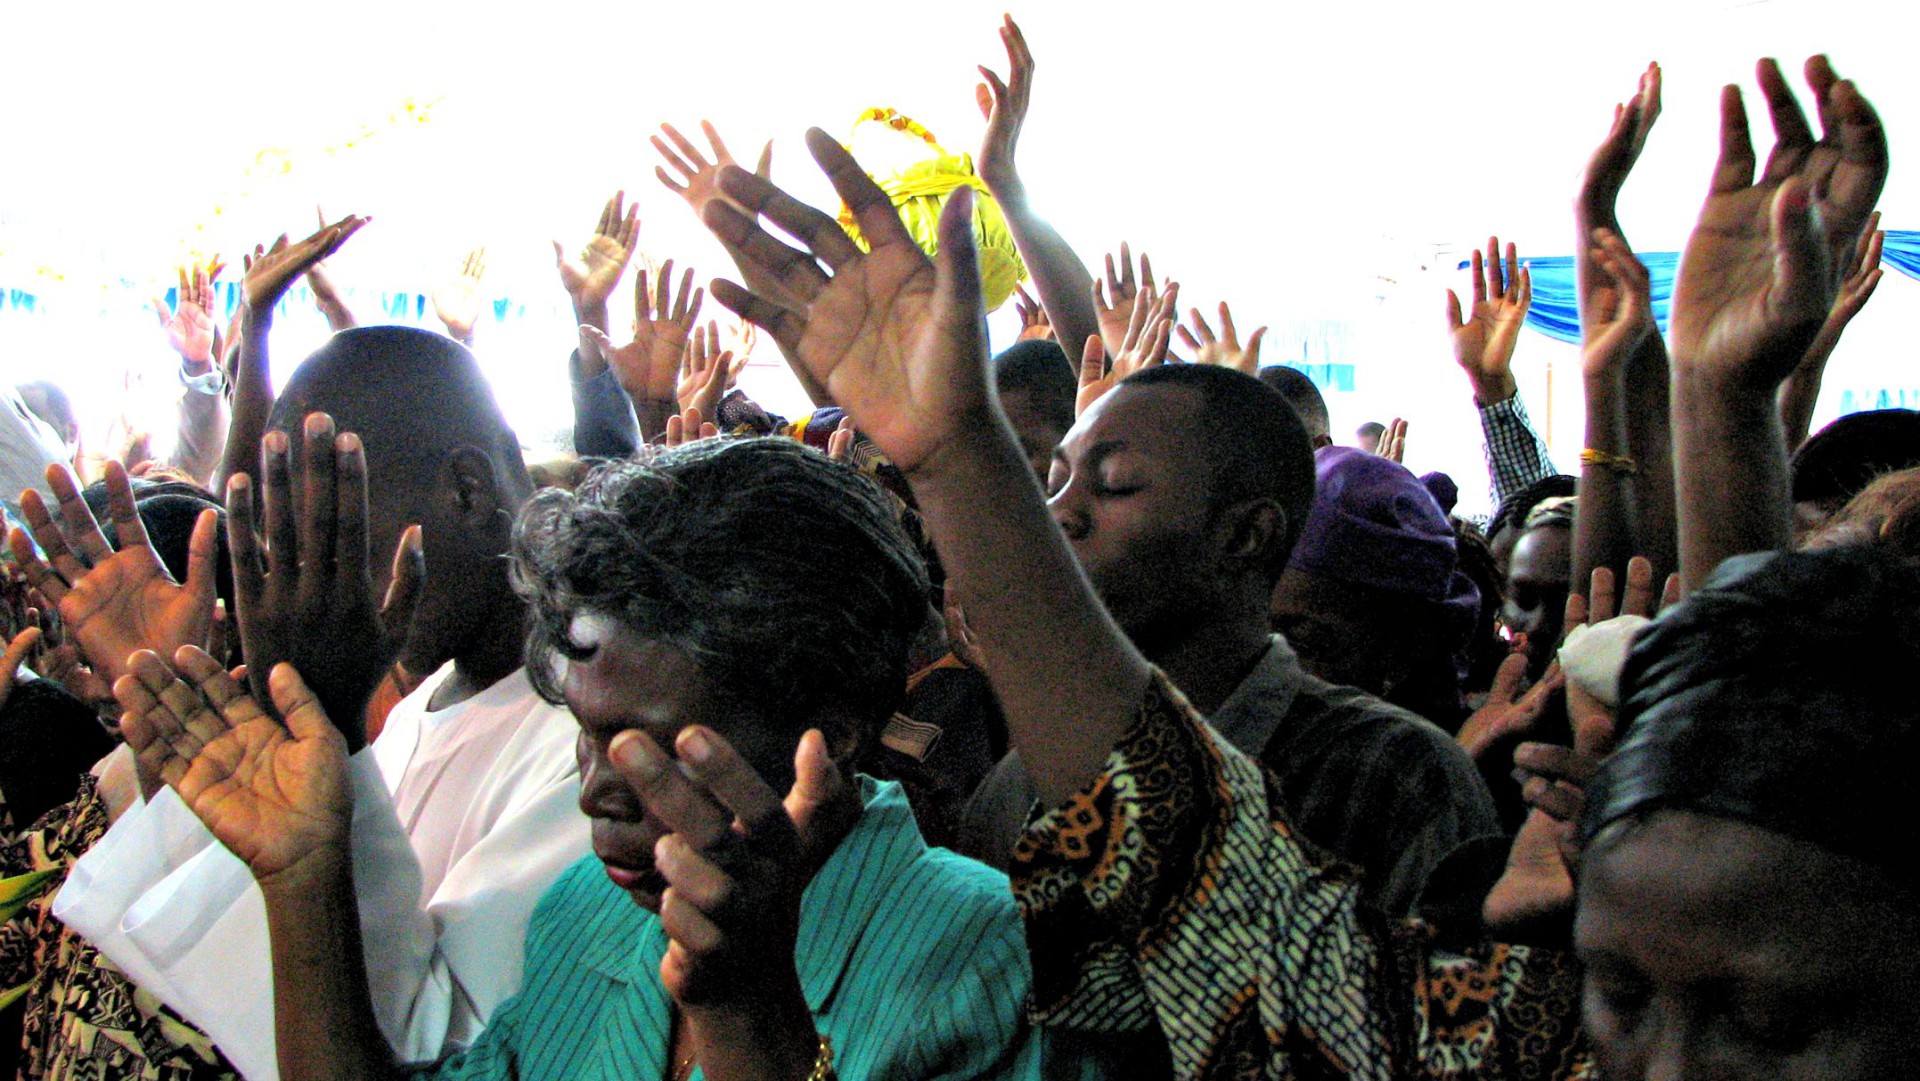 Les nouvelles communauté religieuses prolifèrent en Afrique (Photo d'illustration:Jake Stimpson/Flickr/CC BY 2.0)